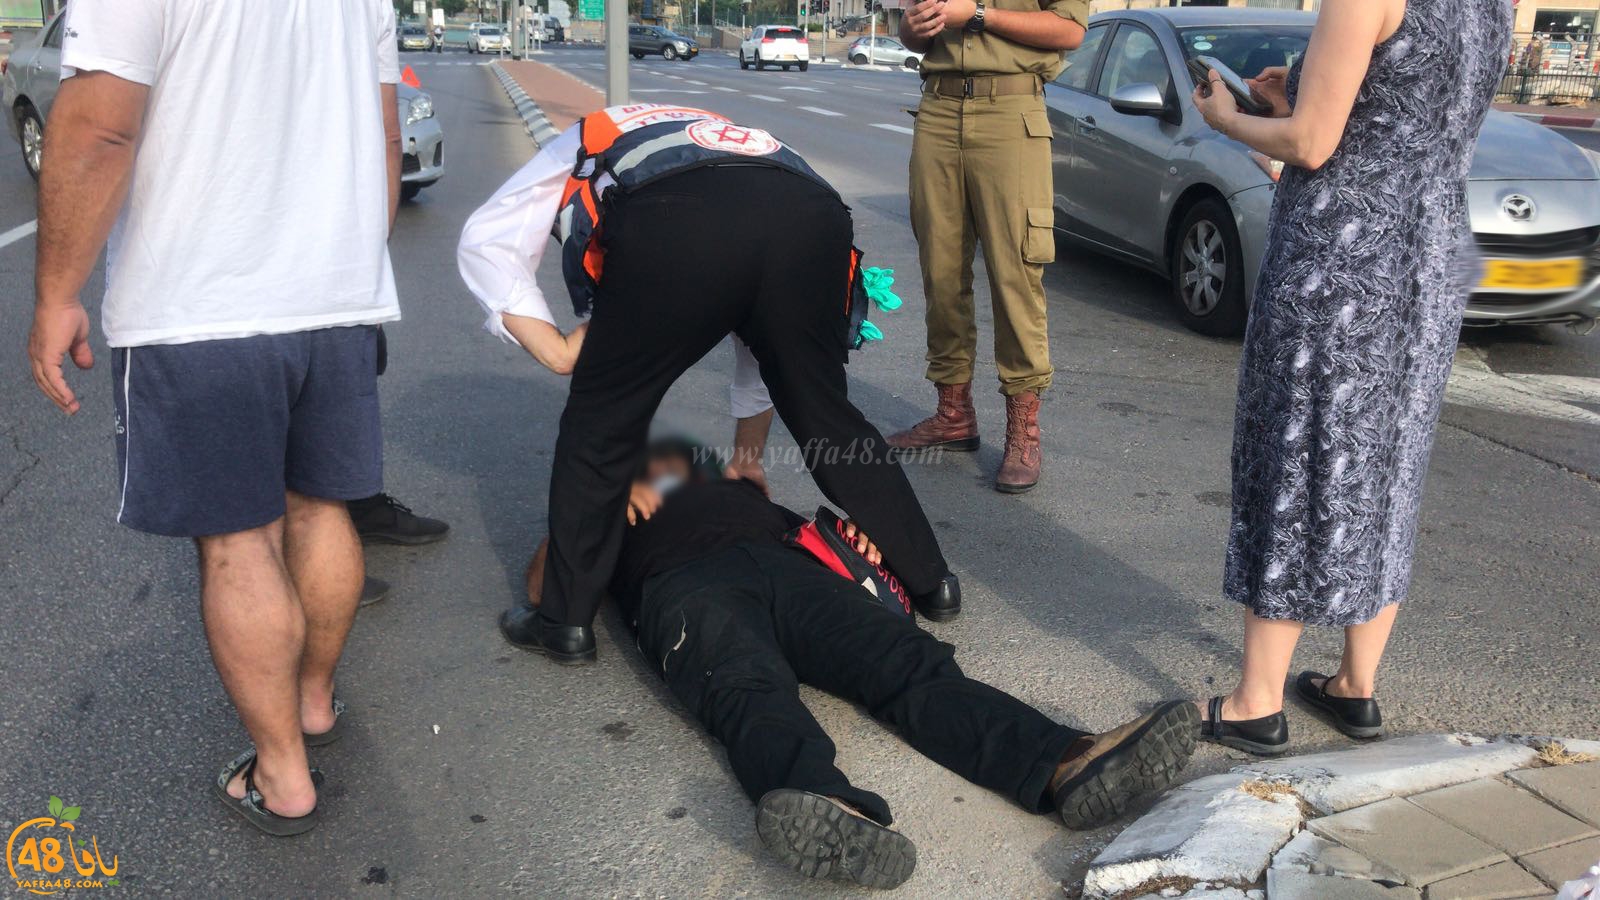  يافا: اصابة راكب دراجة نارية بحادث طرق قرب مستشفى فولفسون